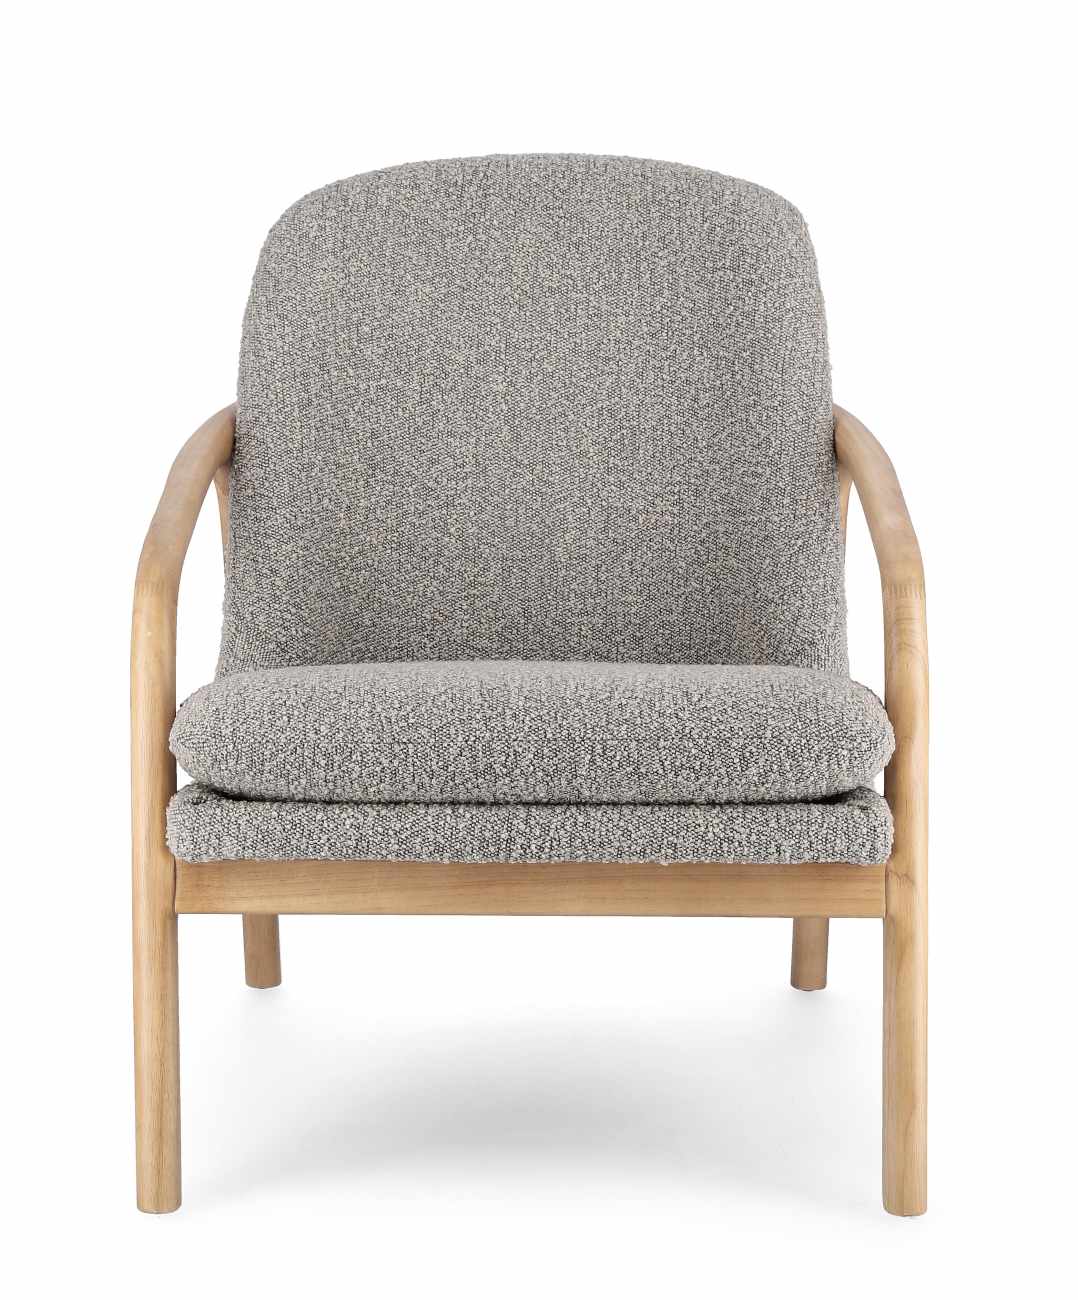 Der Sessel Elaide überzeugt mit seinem modernen Stil. Gefertigt wurde er aus Bouclè-Stoff, welcher einen grauen Farbton besitzt. Das Gestell ist aus Kautschukholz und hat eine natürliche Farbe. Der Sessel verfügt über eine Armlehne.